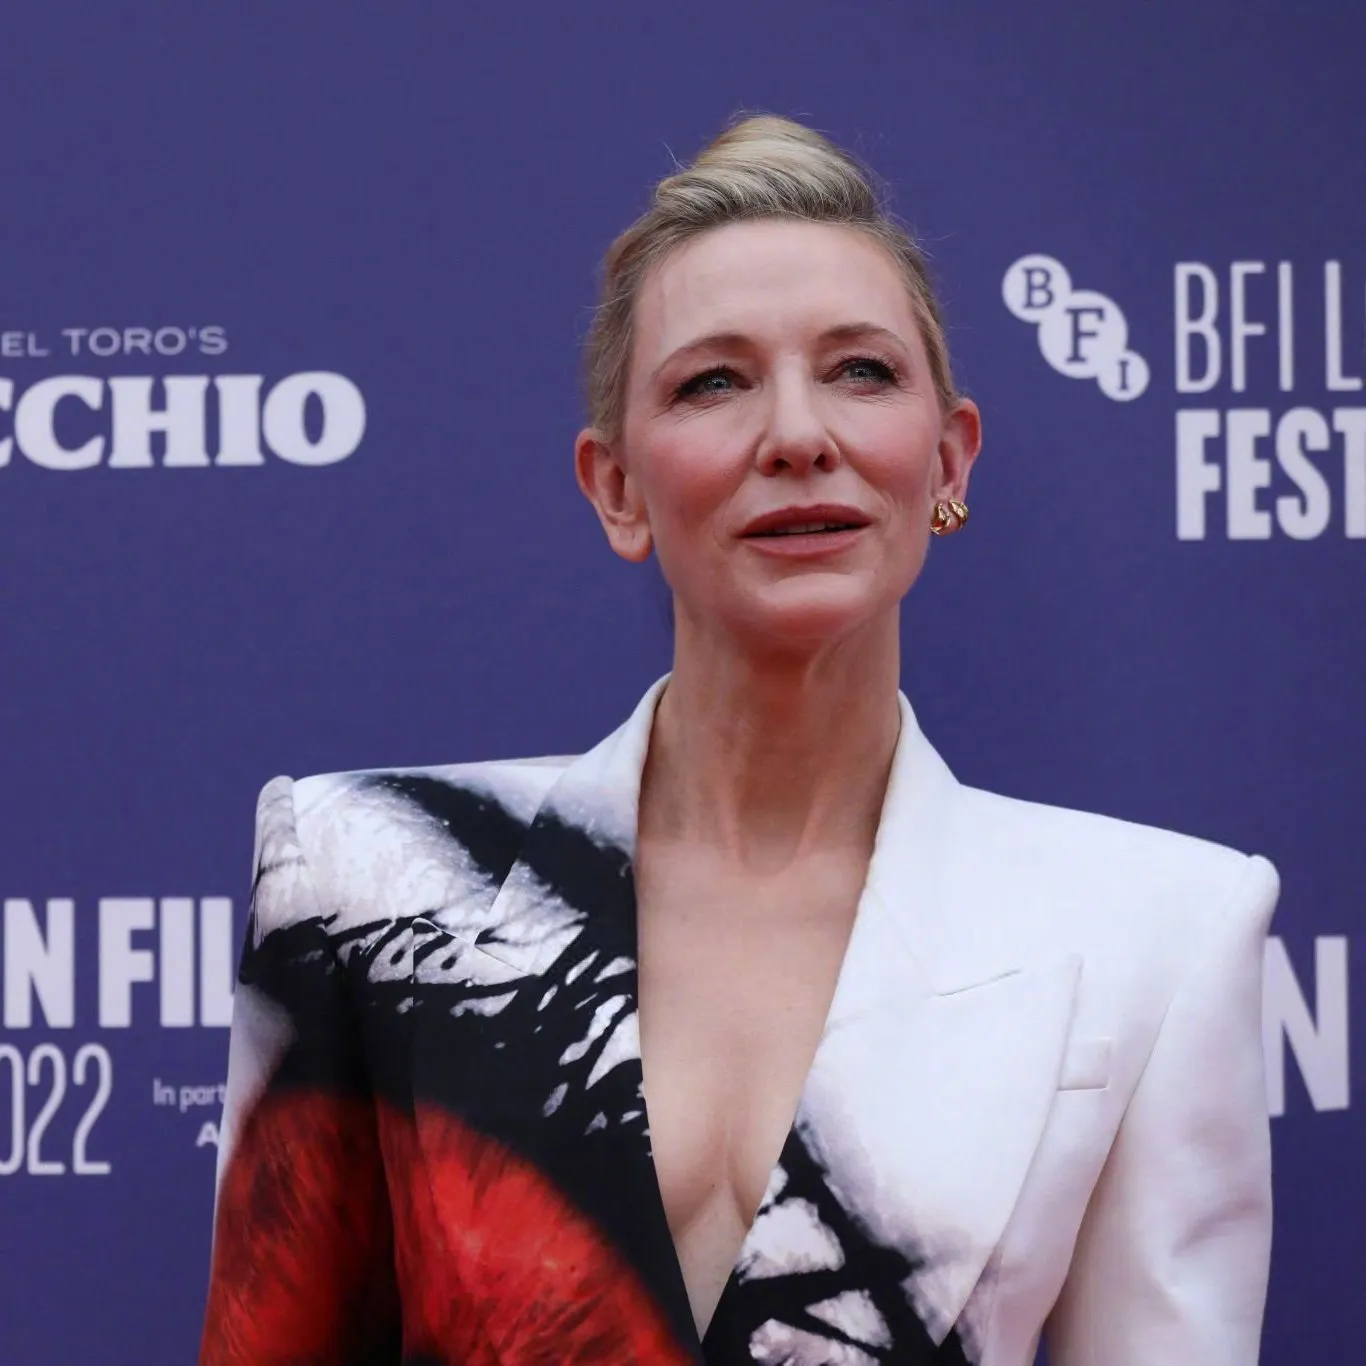 Cate Blanchett attends 'Pinocchio' premiere at BFI London Film Festival | FMV6